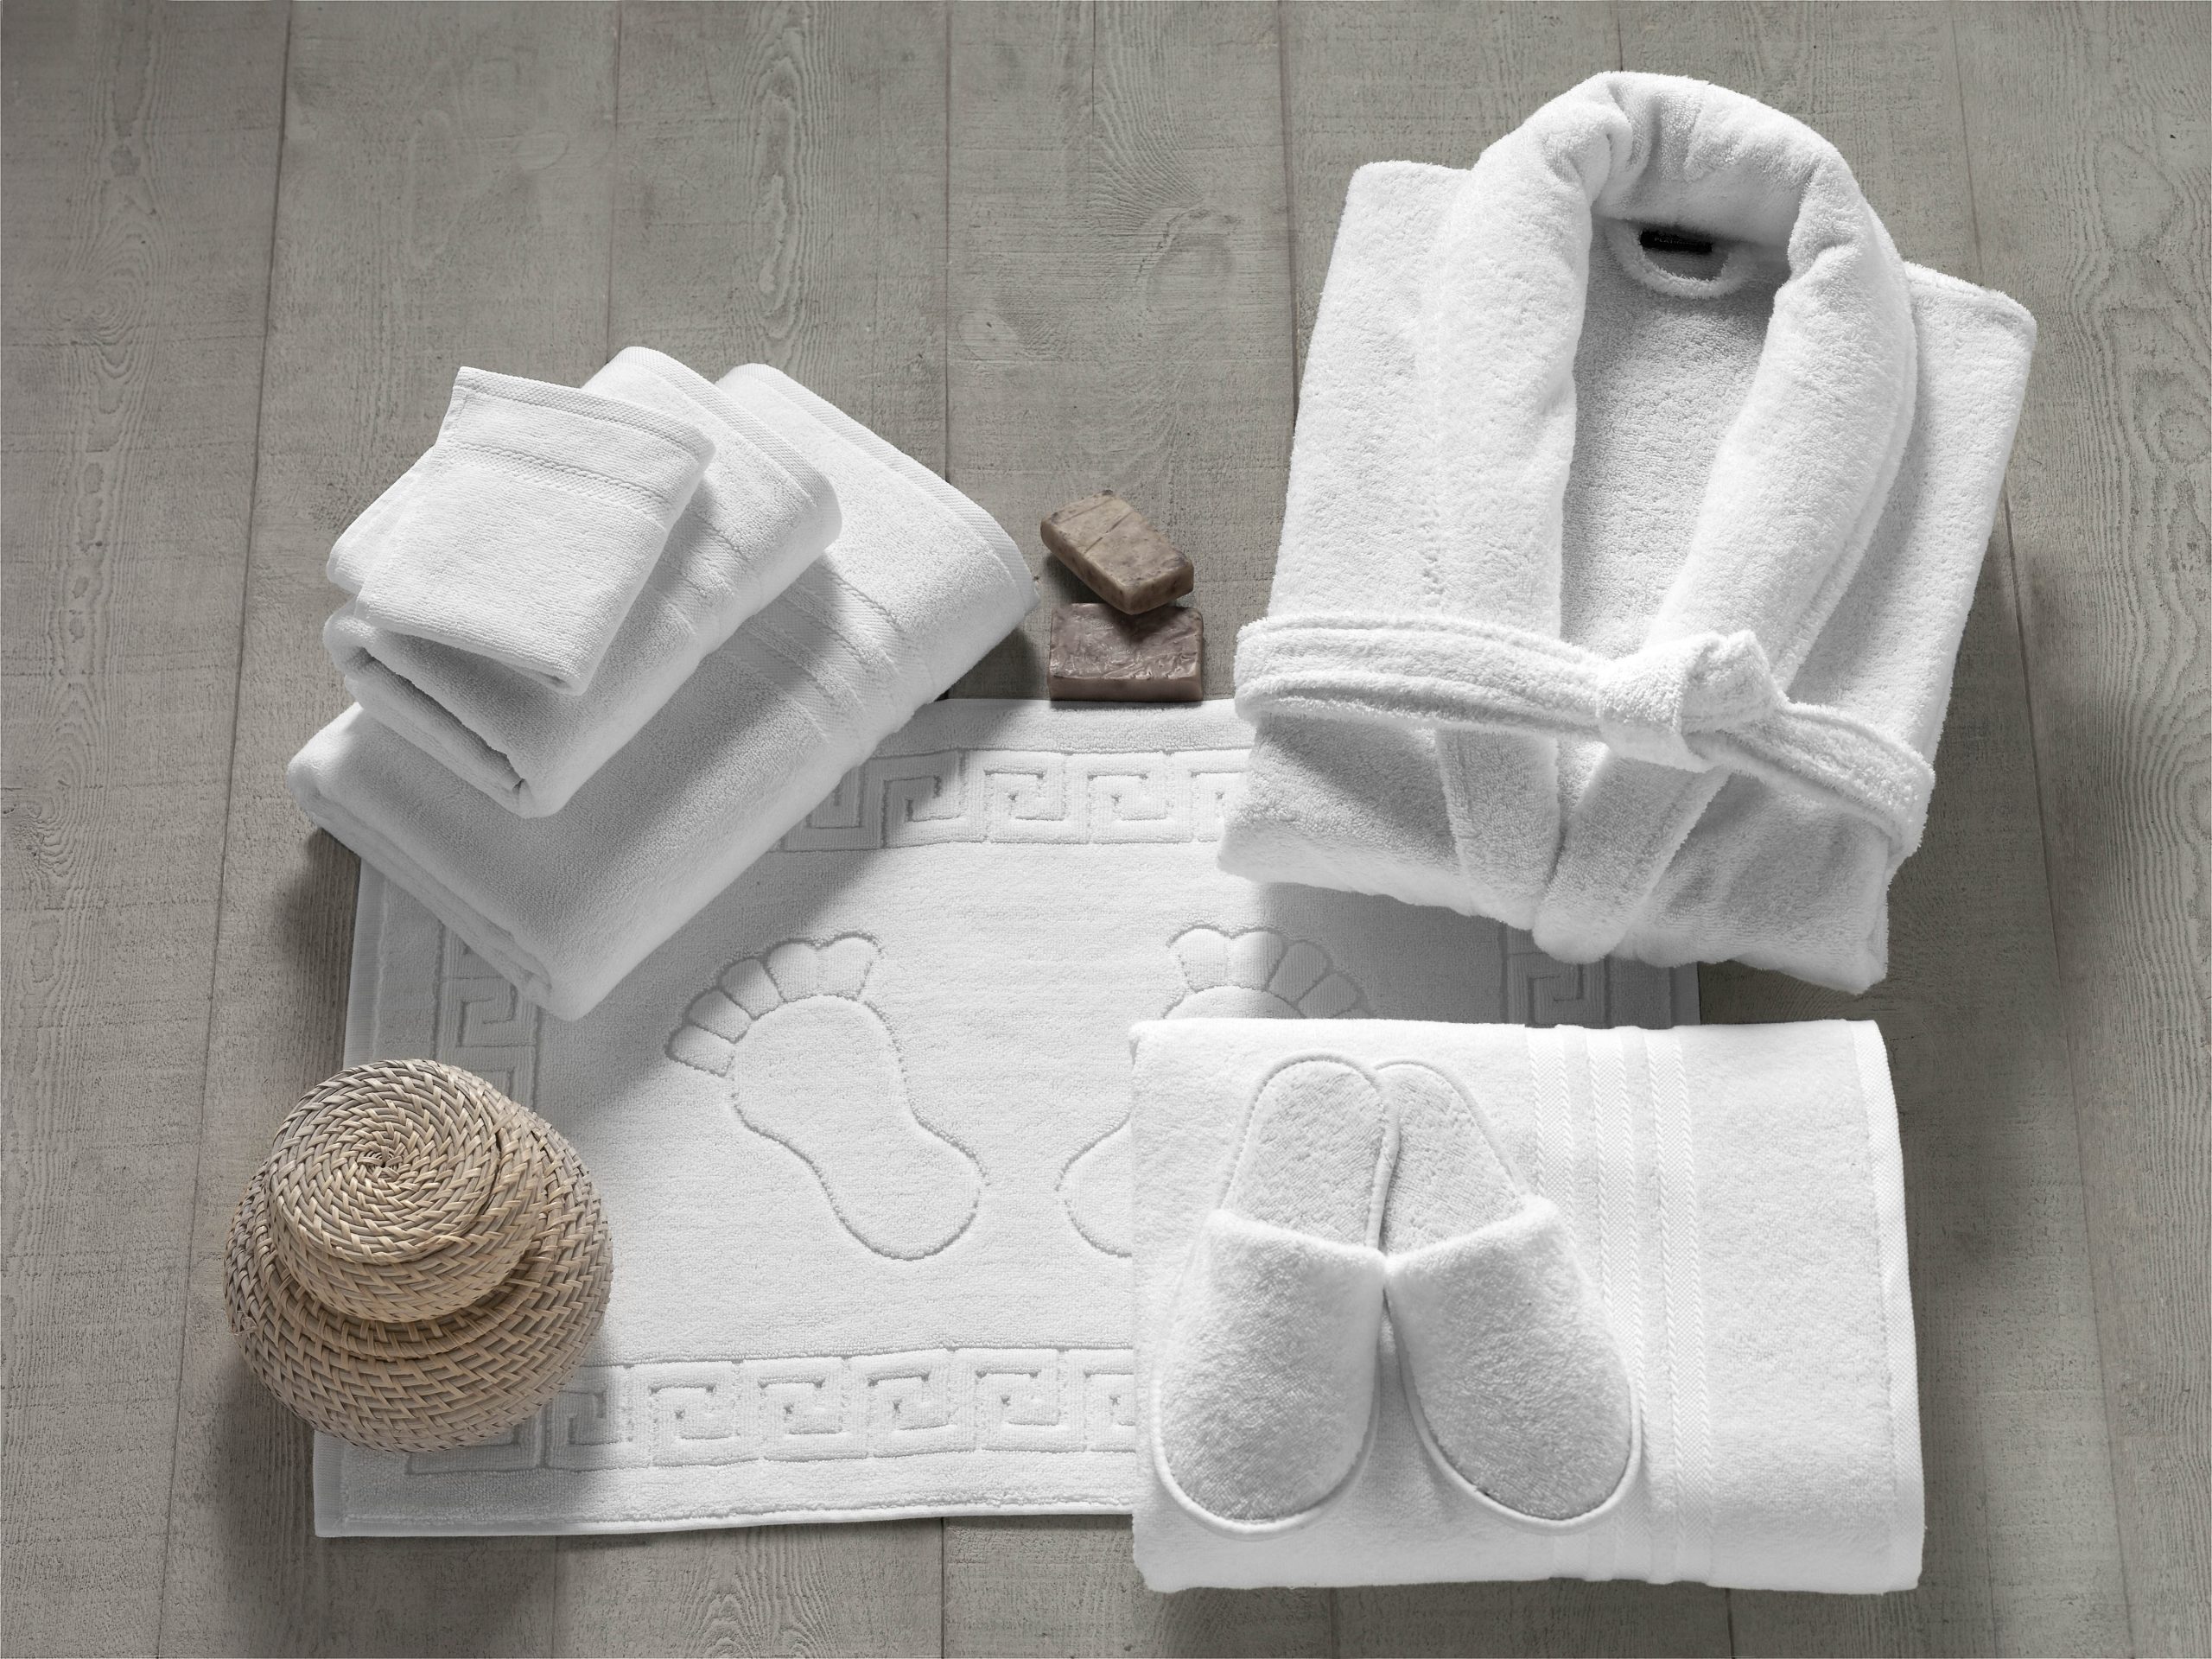 Махровые изделия полотенца. Полотенца и халаты для гостиниц. Отель халат полотенца. Махровый халат и полотенца. Махровые изделия в гостинице.